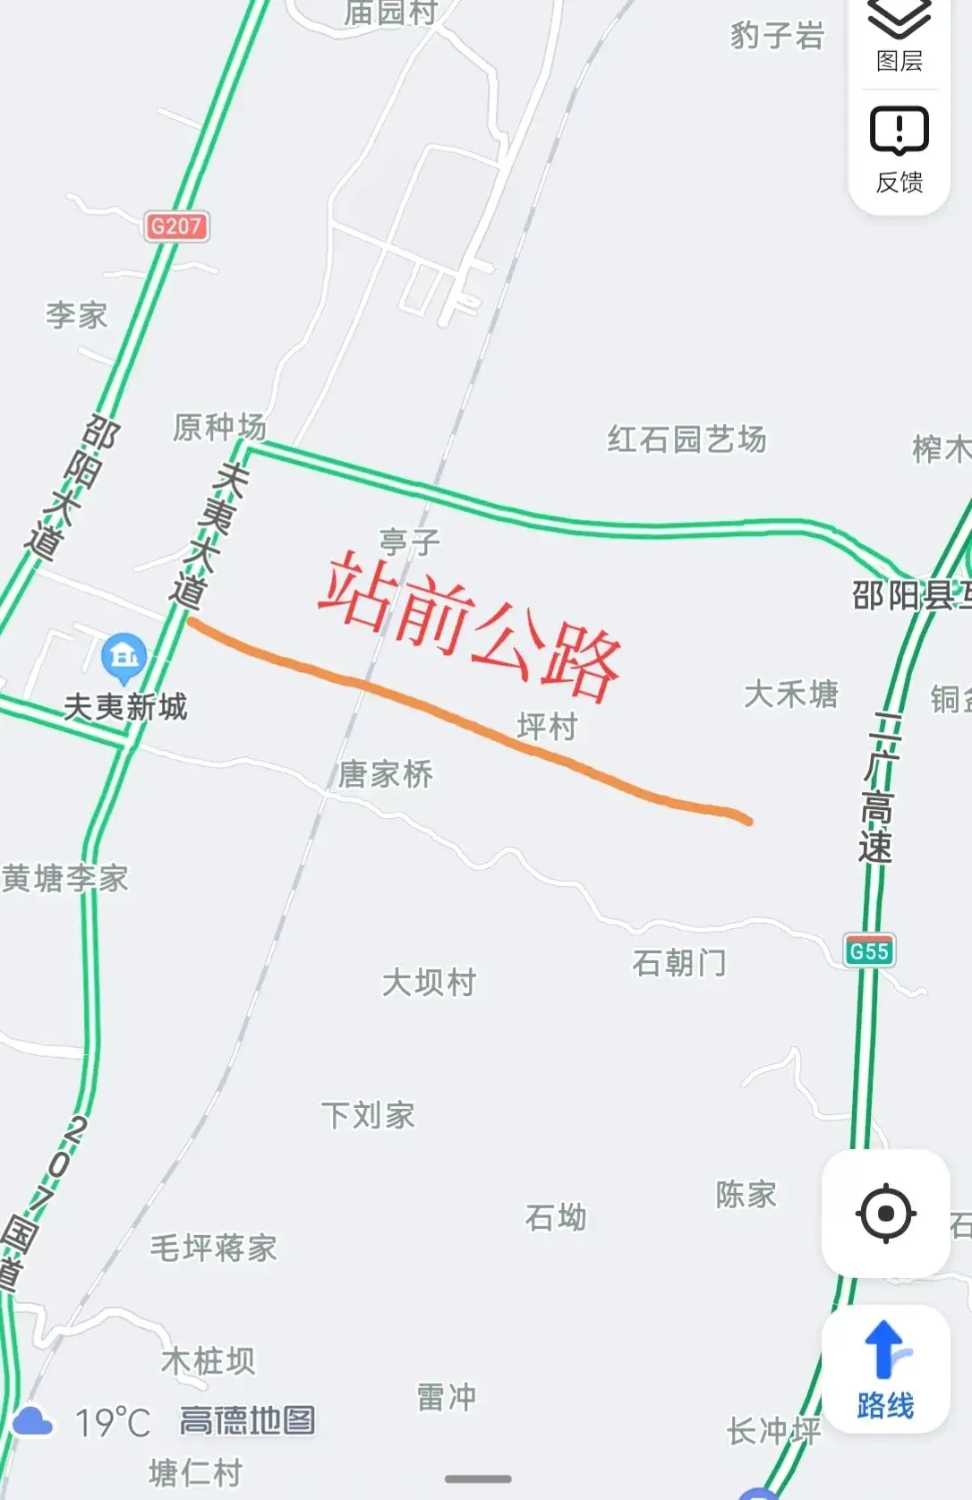 邵阳县高铁站选址